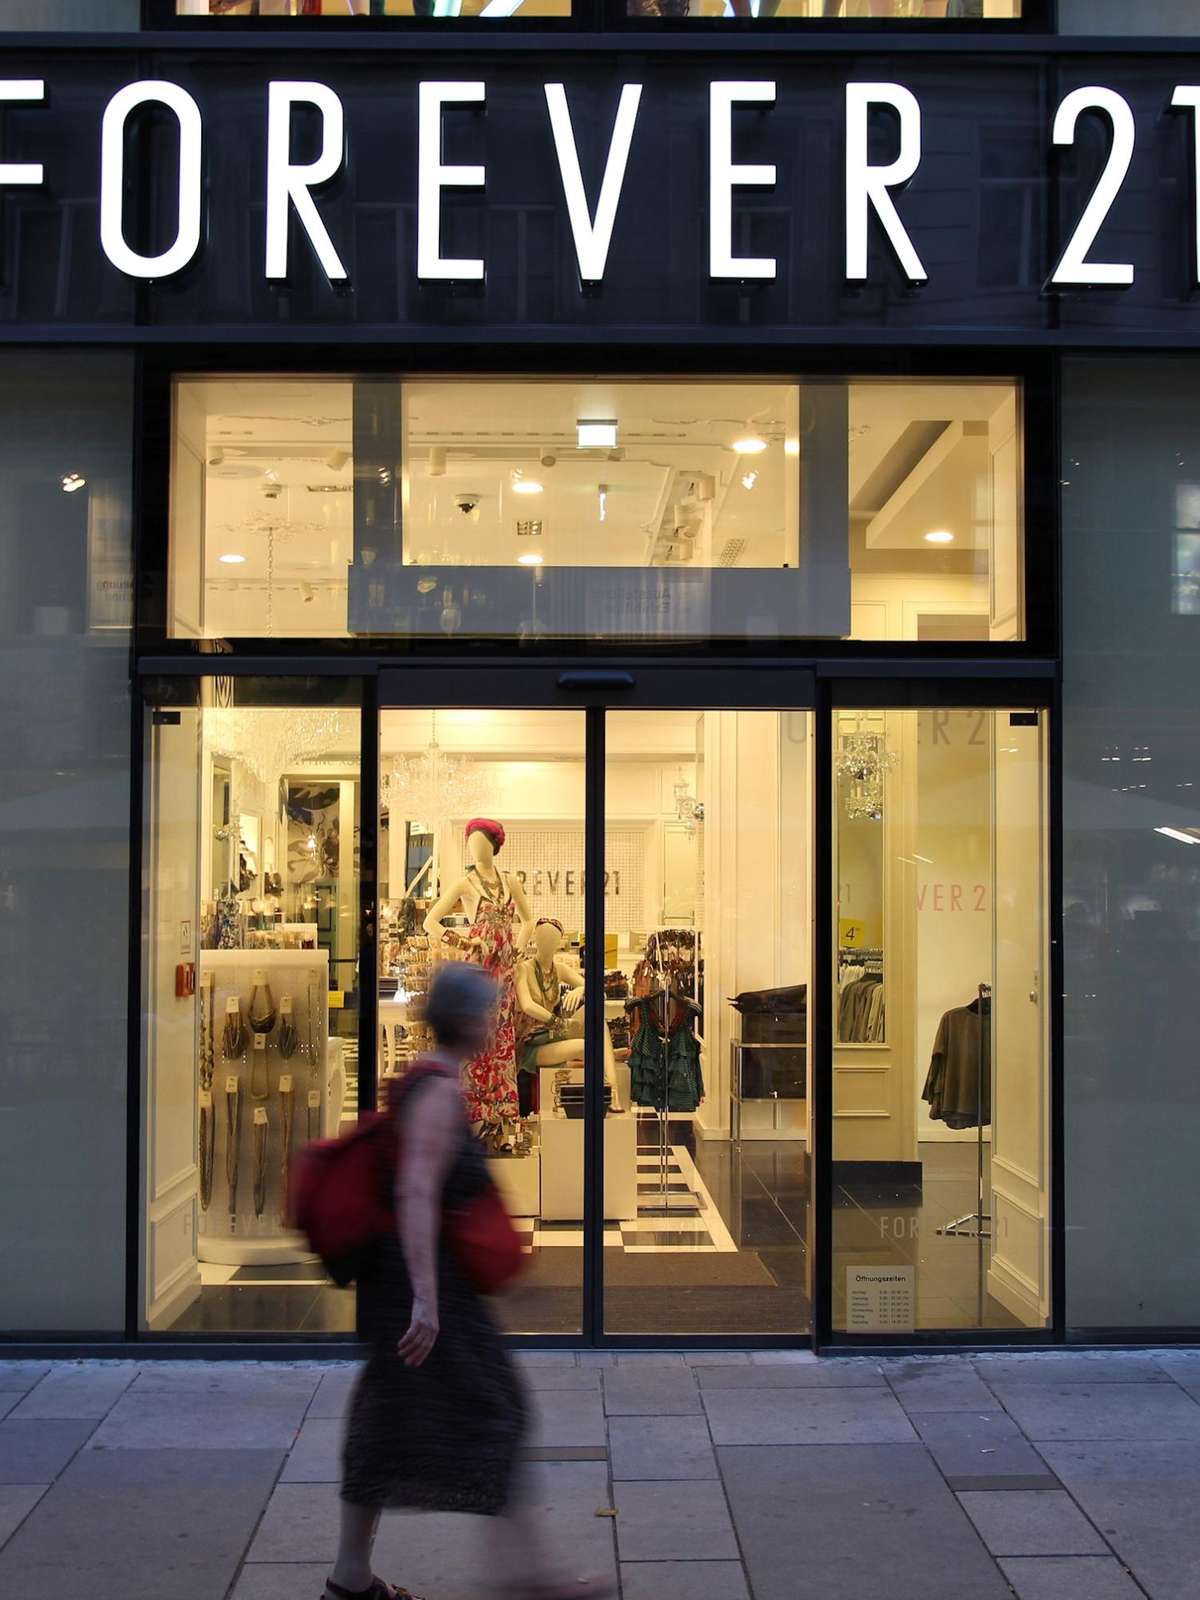 Forever 21 deve fechar suas 15 lojas no Brasil e realiza